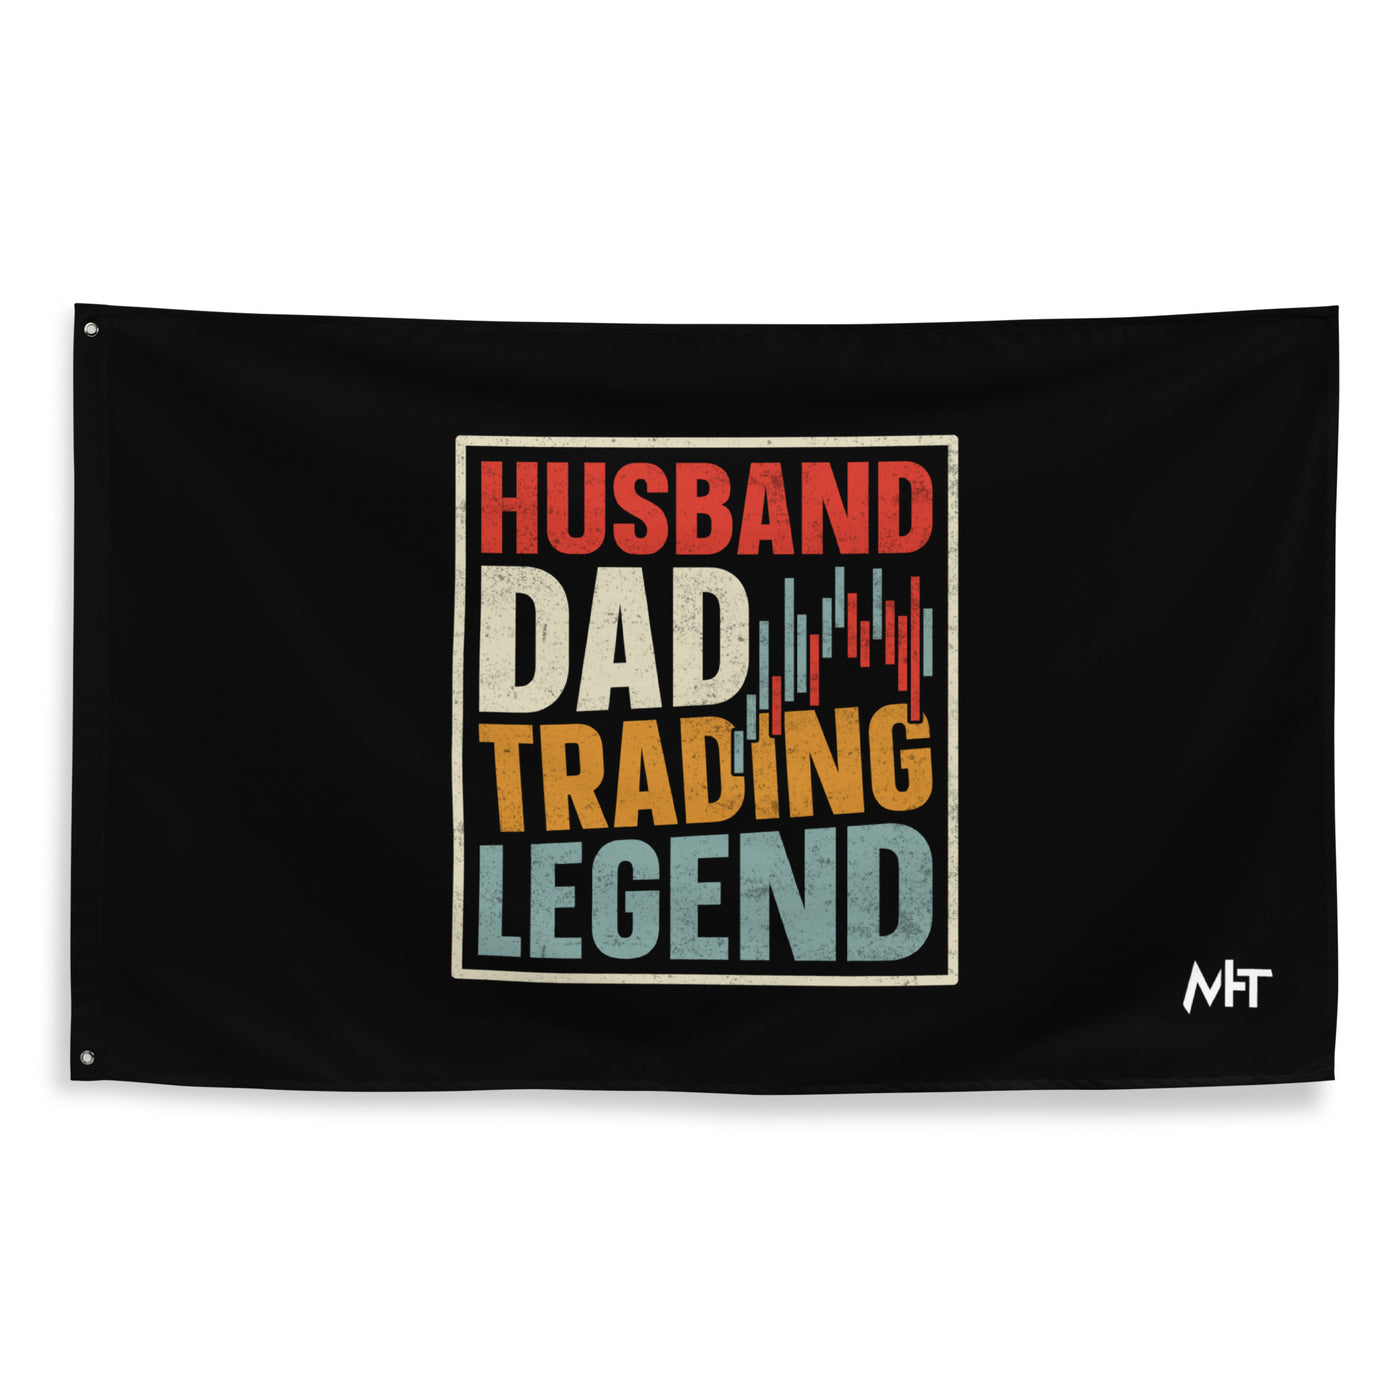 Husband, Dad, Trading Legend - Flag